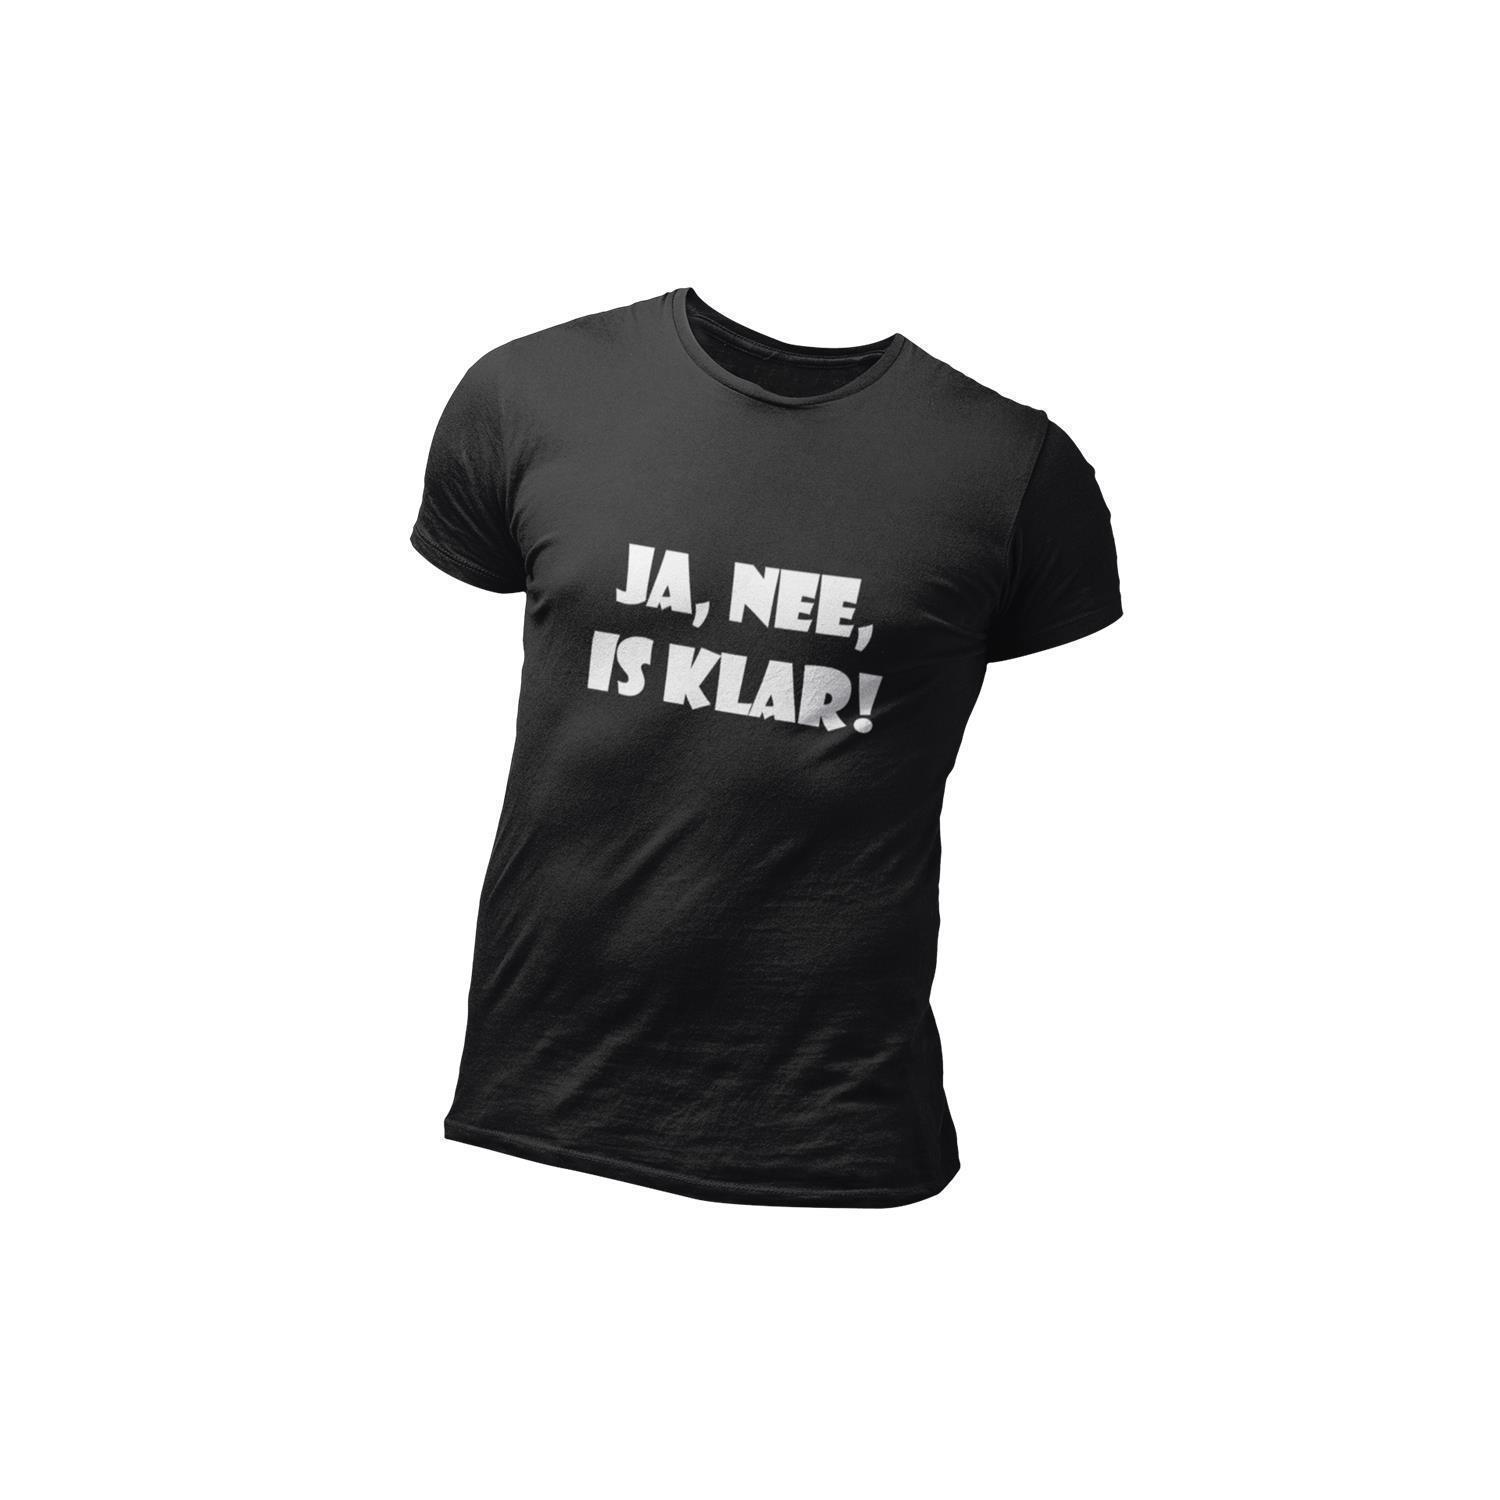 T-Shirt »Ja, nee, is klar!«